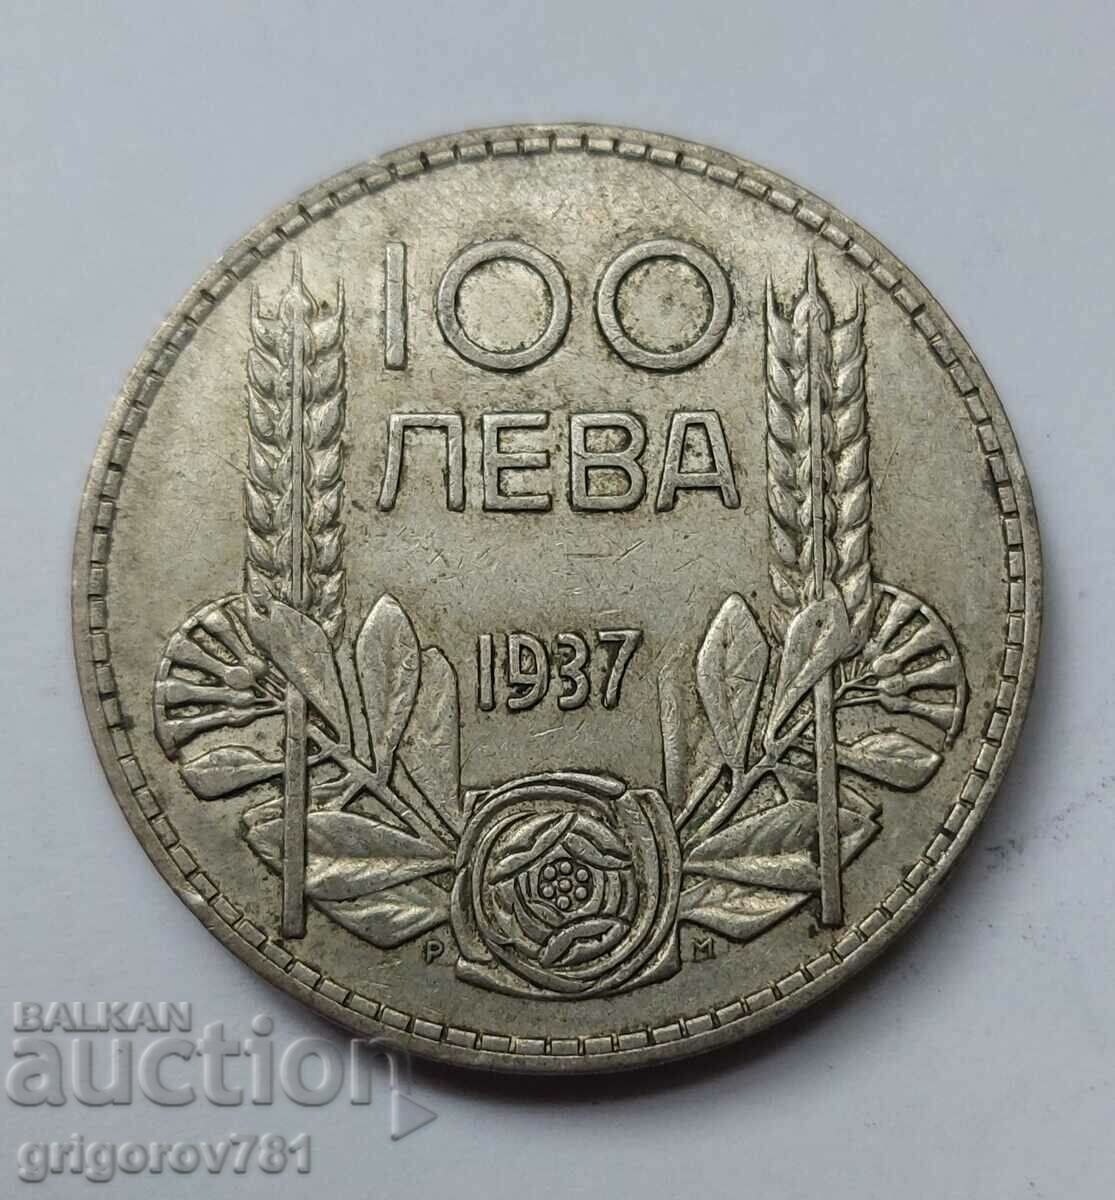 Ασήμι 100 λέβα Βουλγαρία 1937 - ασημένιο νόμισμα #13